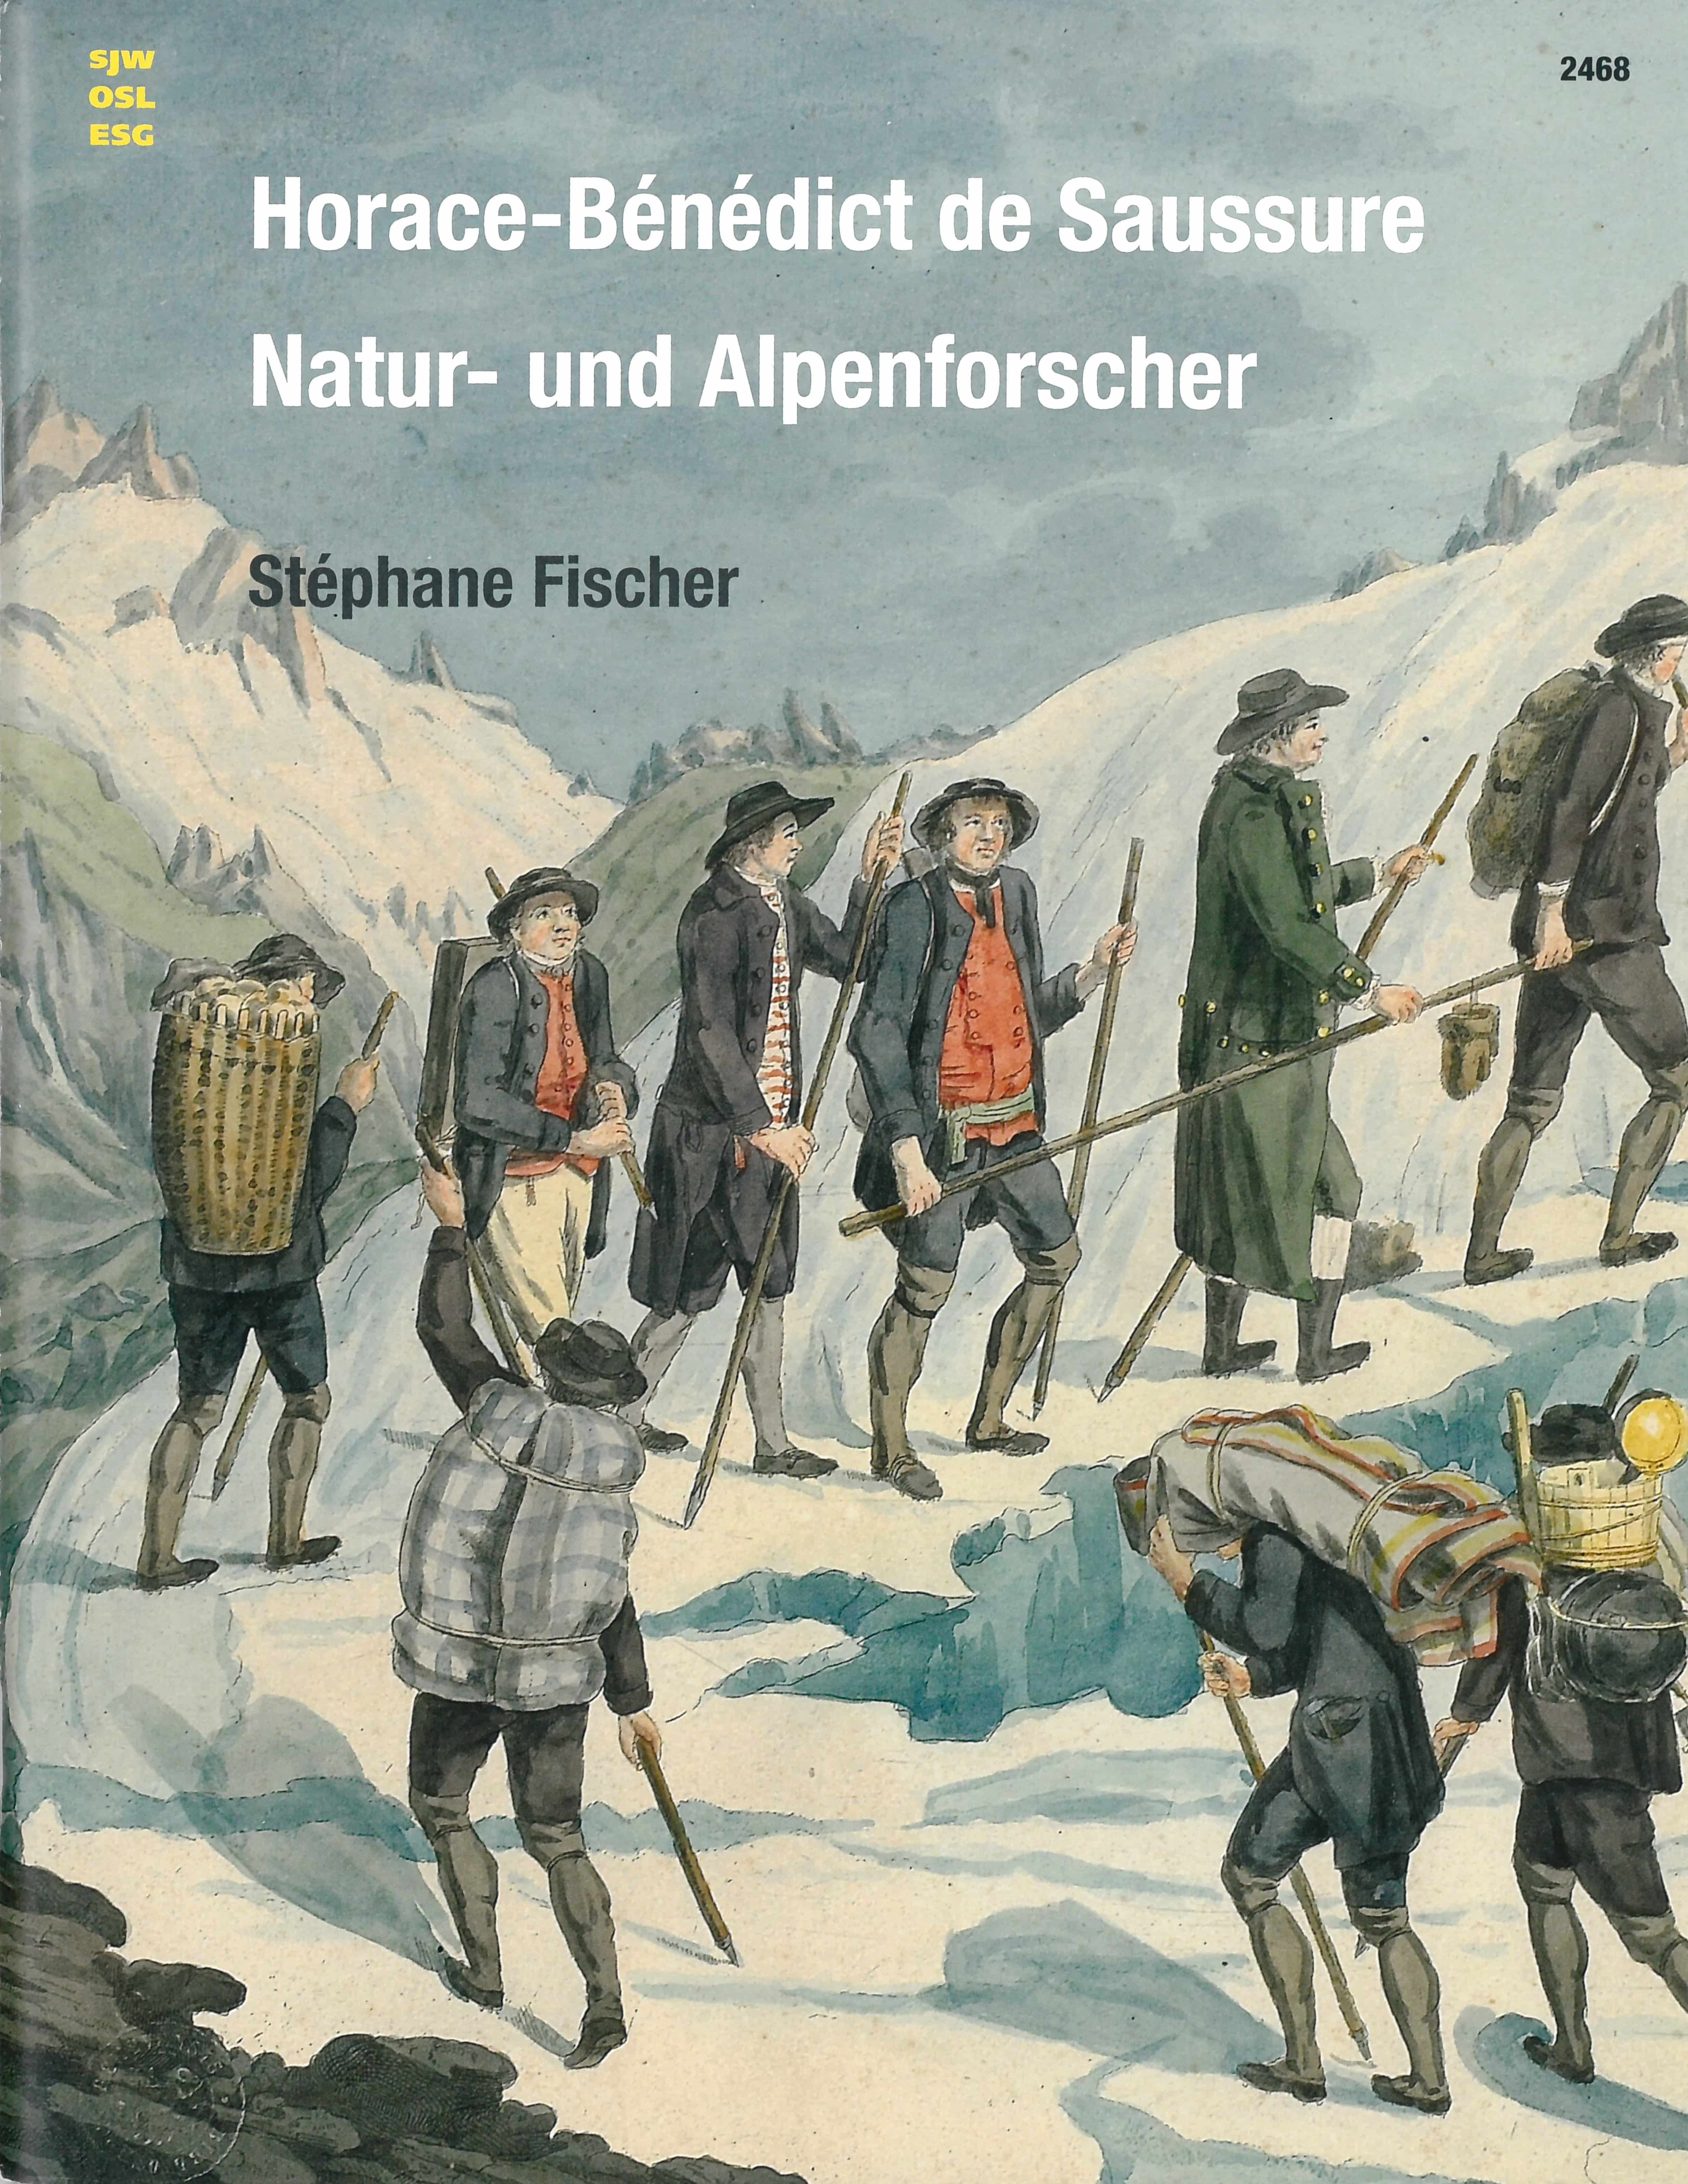 Horace-Bénédict de Saussure – Natur- und Alpenforscher, ein Buch von Stéphane Fischer, SJW Verlag, Sachbuch, Schweiz